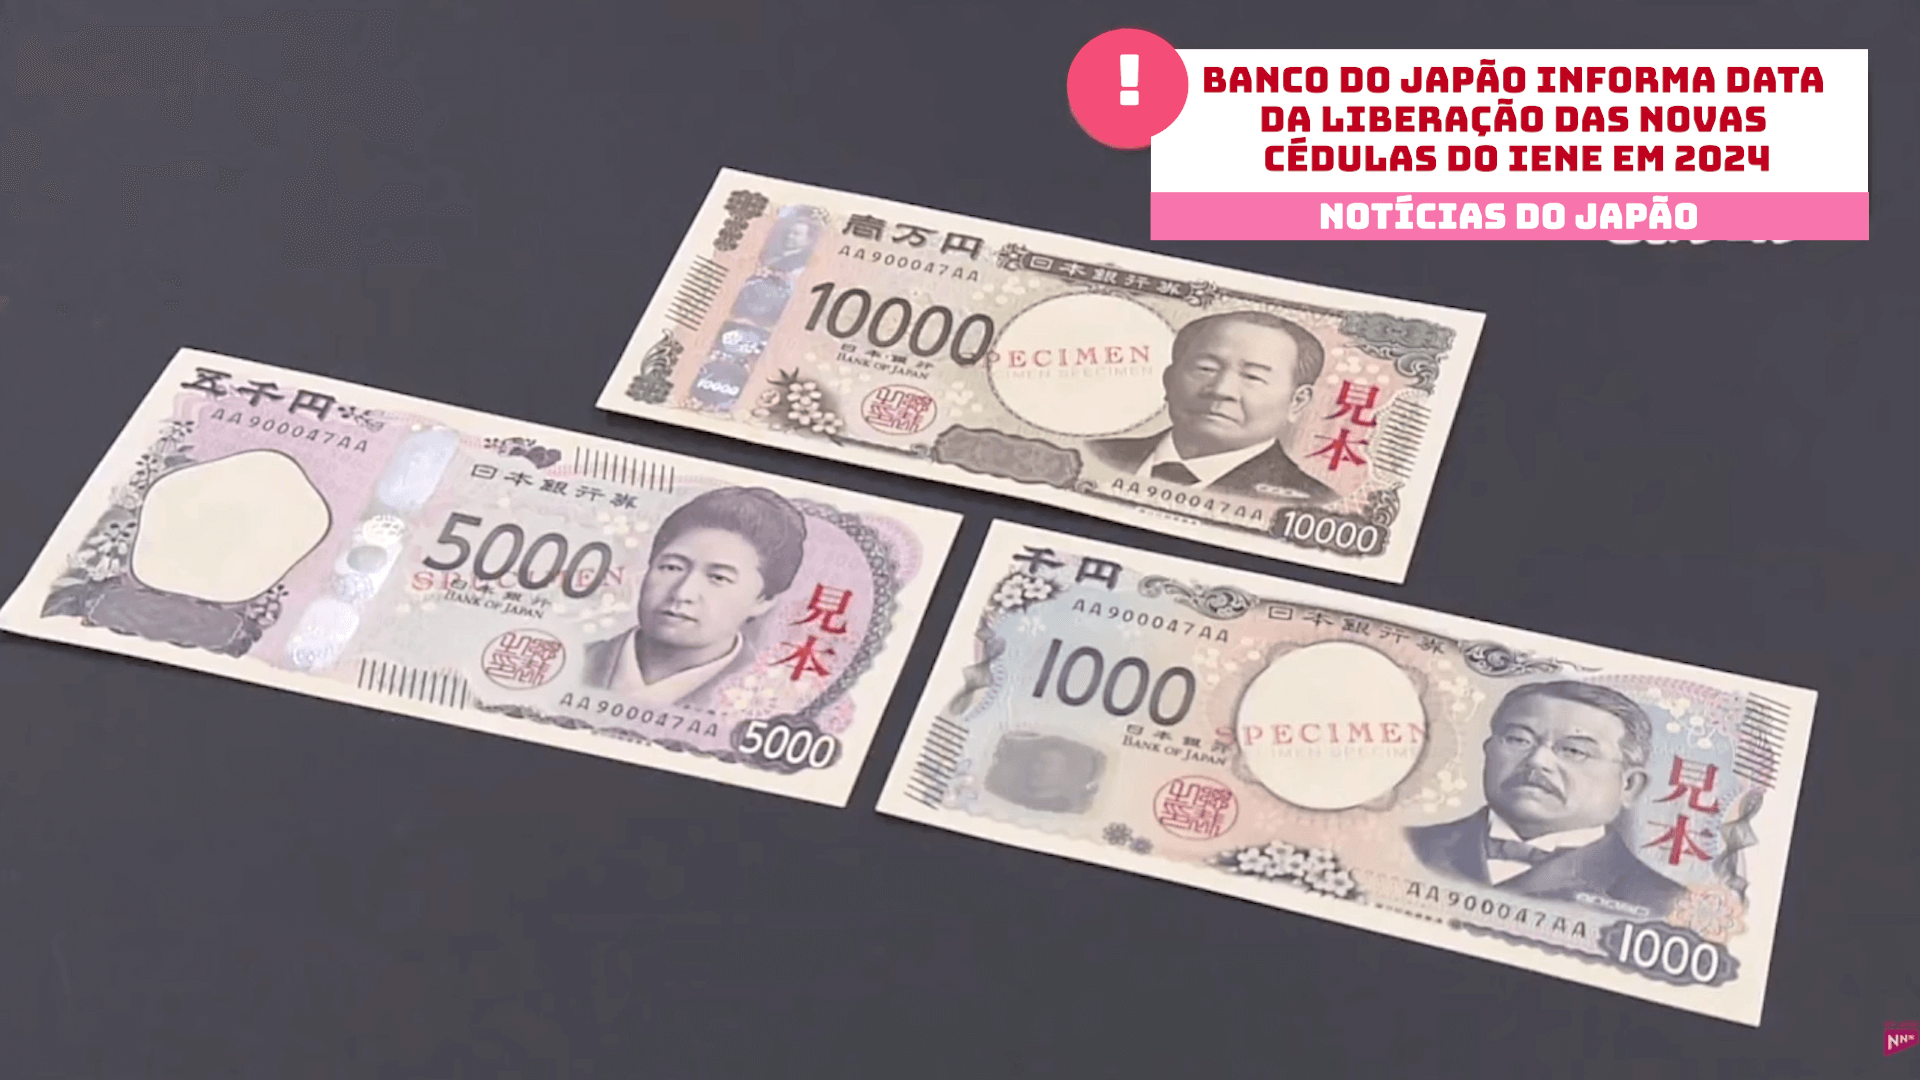 Banco do Japão informa data da liberação das novas cédulas do iene em 2024 